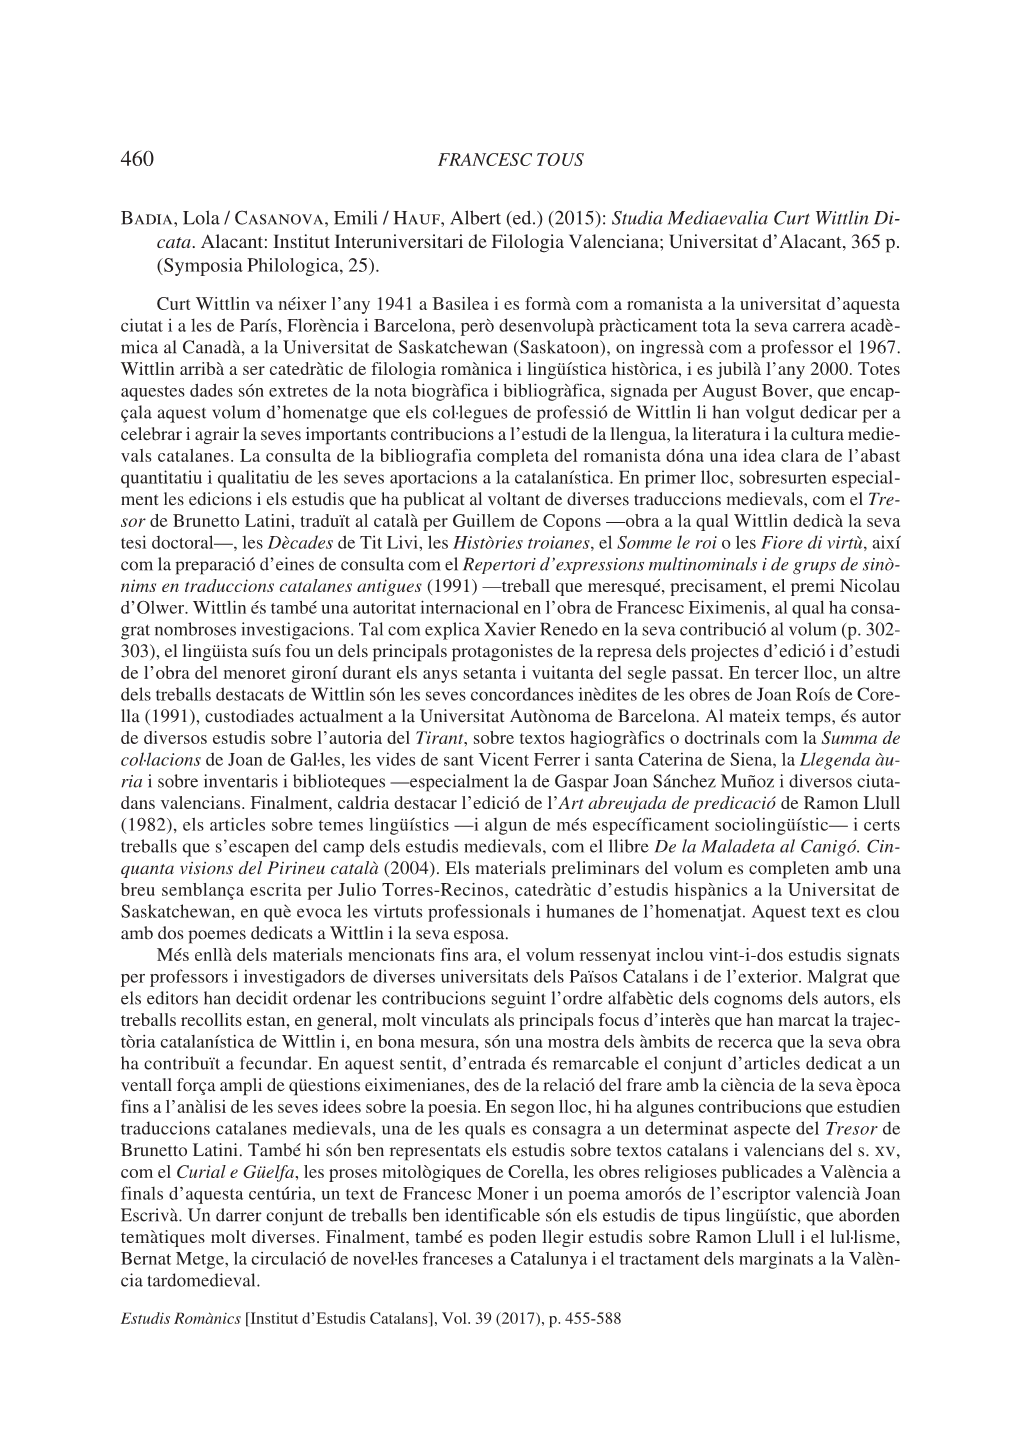 (Ed.) (2015): Studia Mediaevalia Curt Wittlin Di- Cata. Alacant